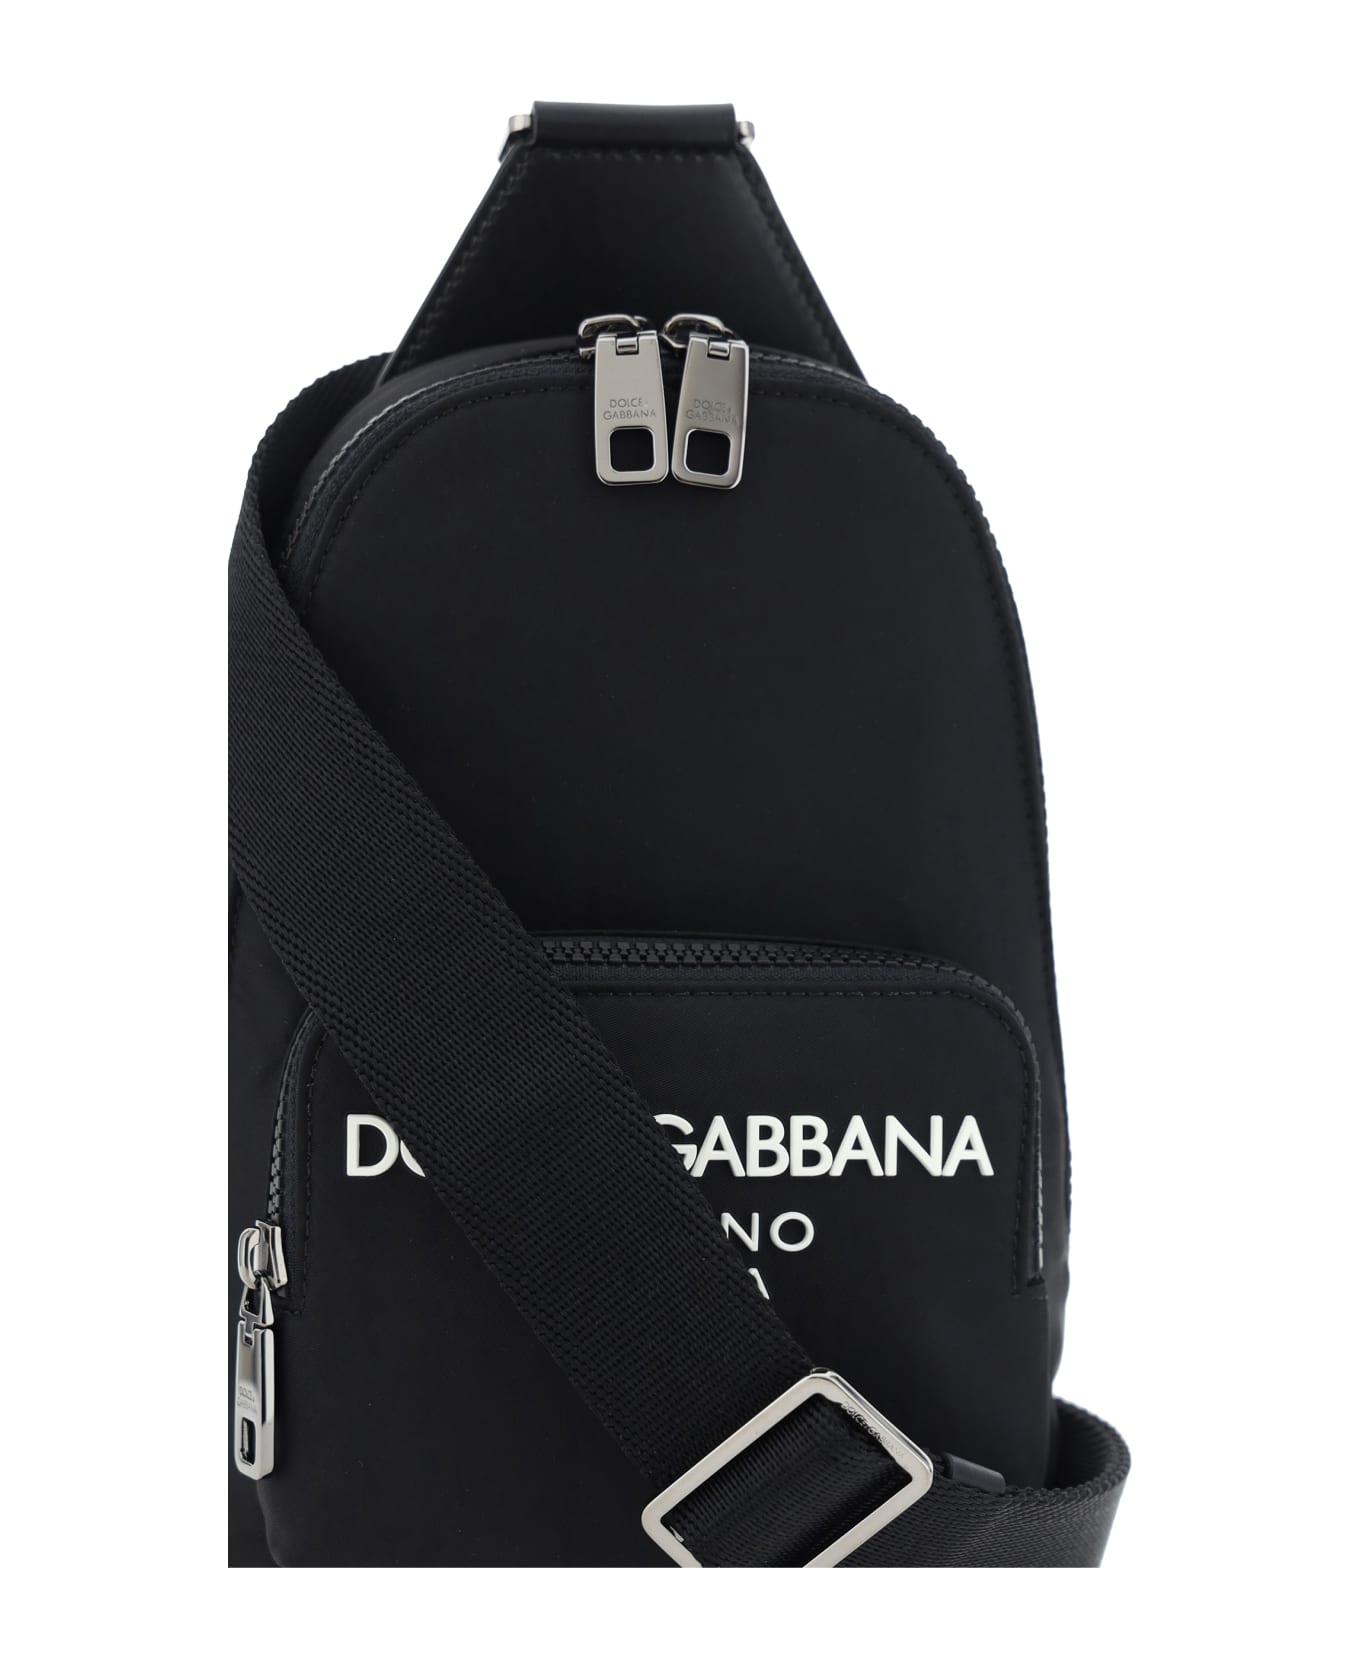 Dolce & Gabbana One-shoulder Backpack - Nero